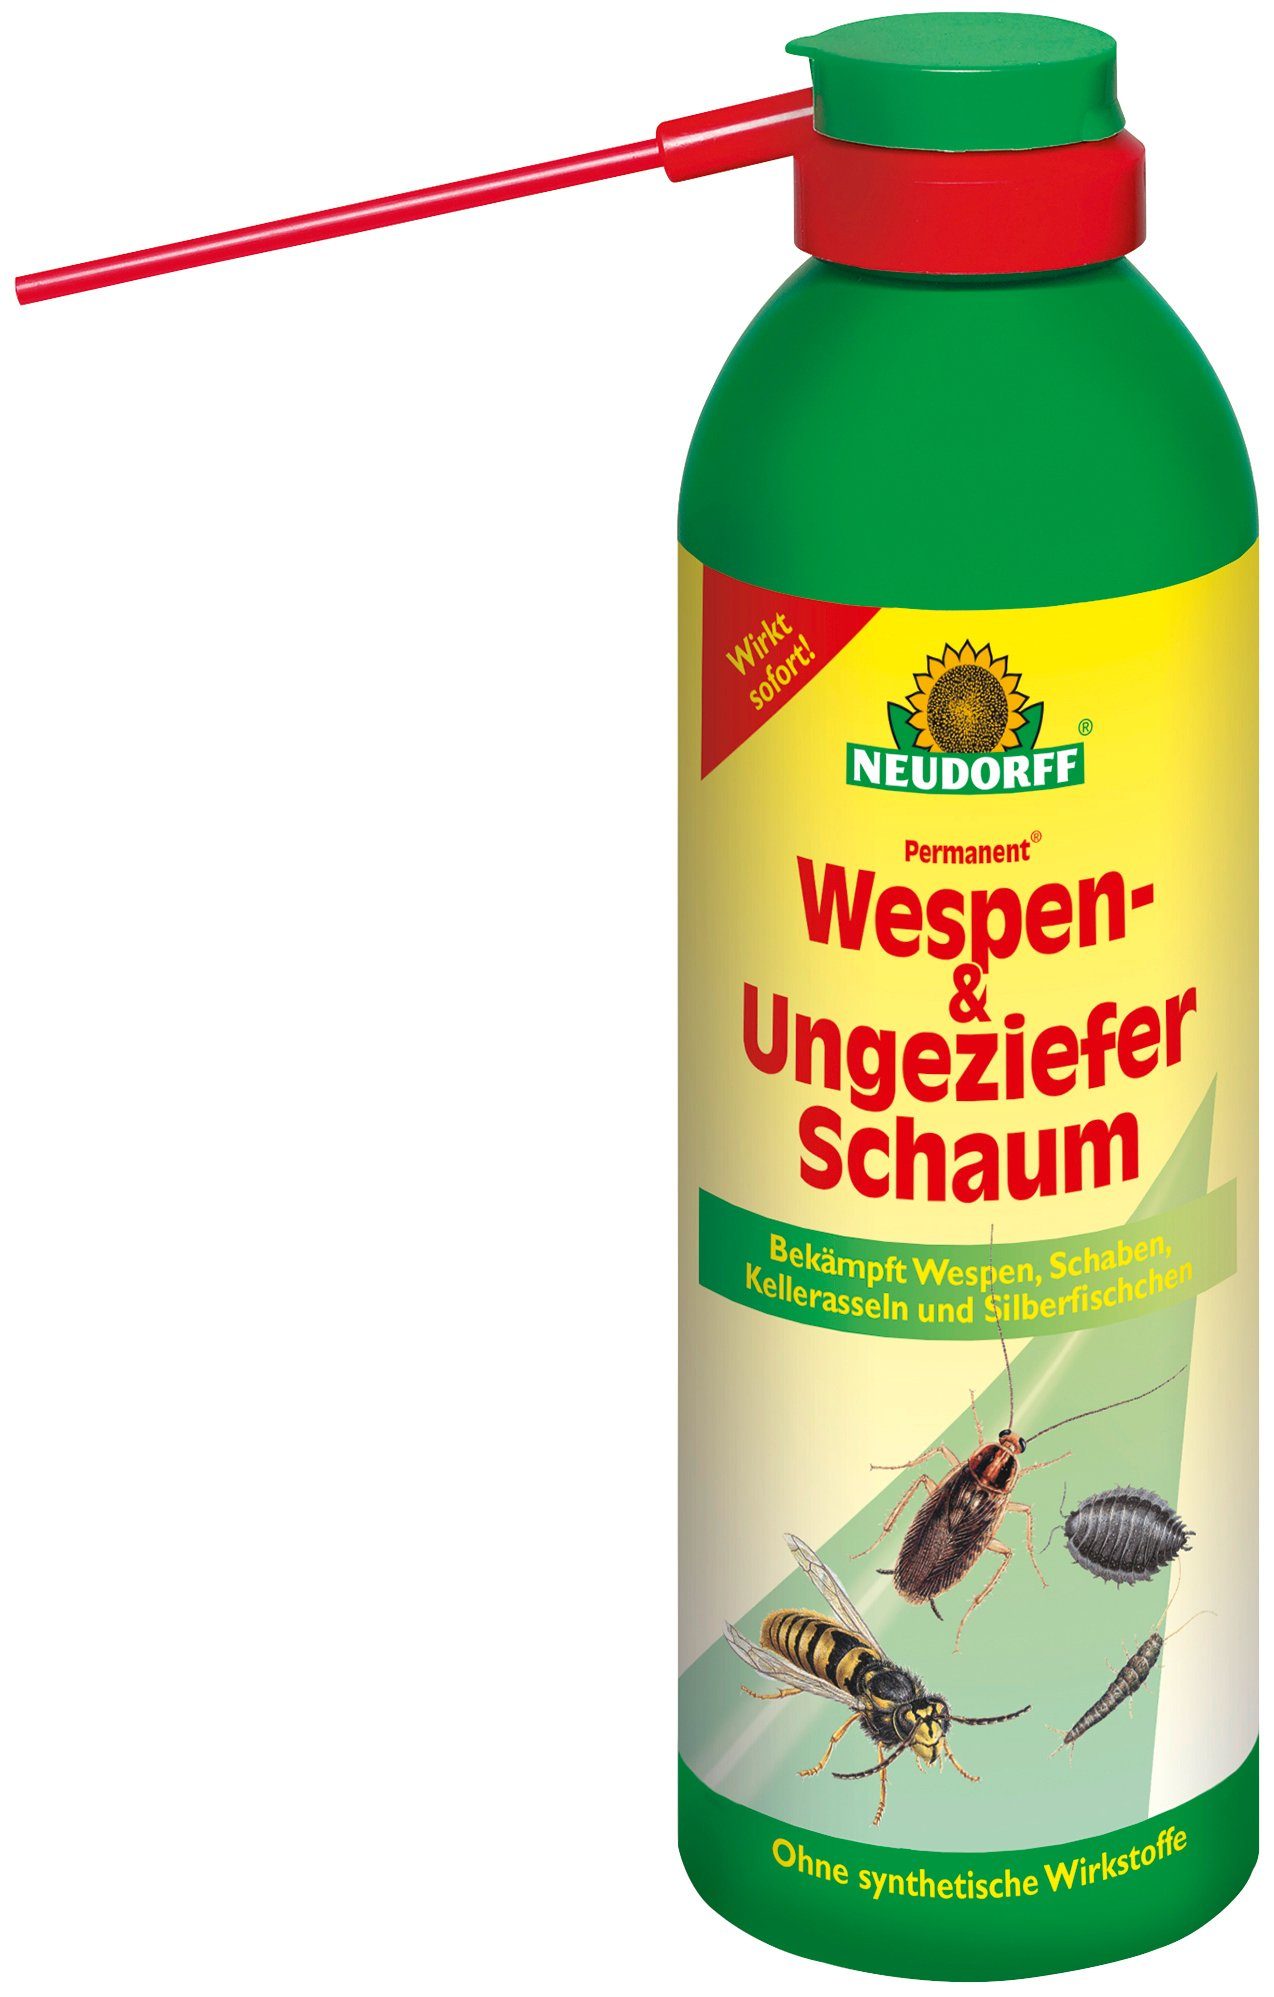 Neudorff Wespenspray Permanent Wespen- & ml, UngezieferSchaum, 1-St. Packung, 300